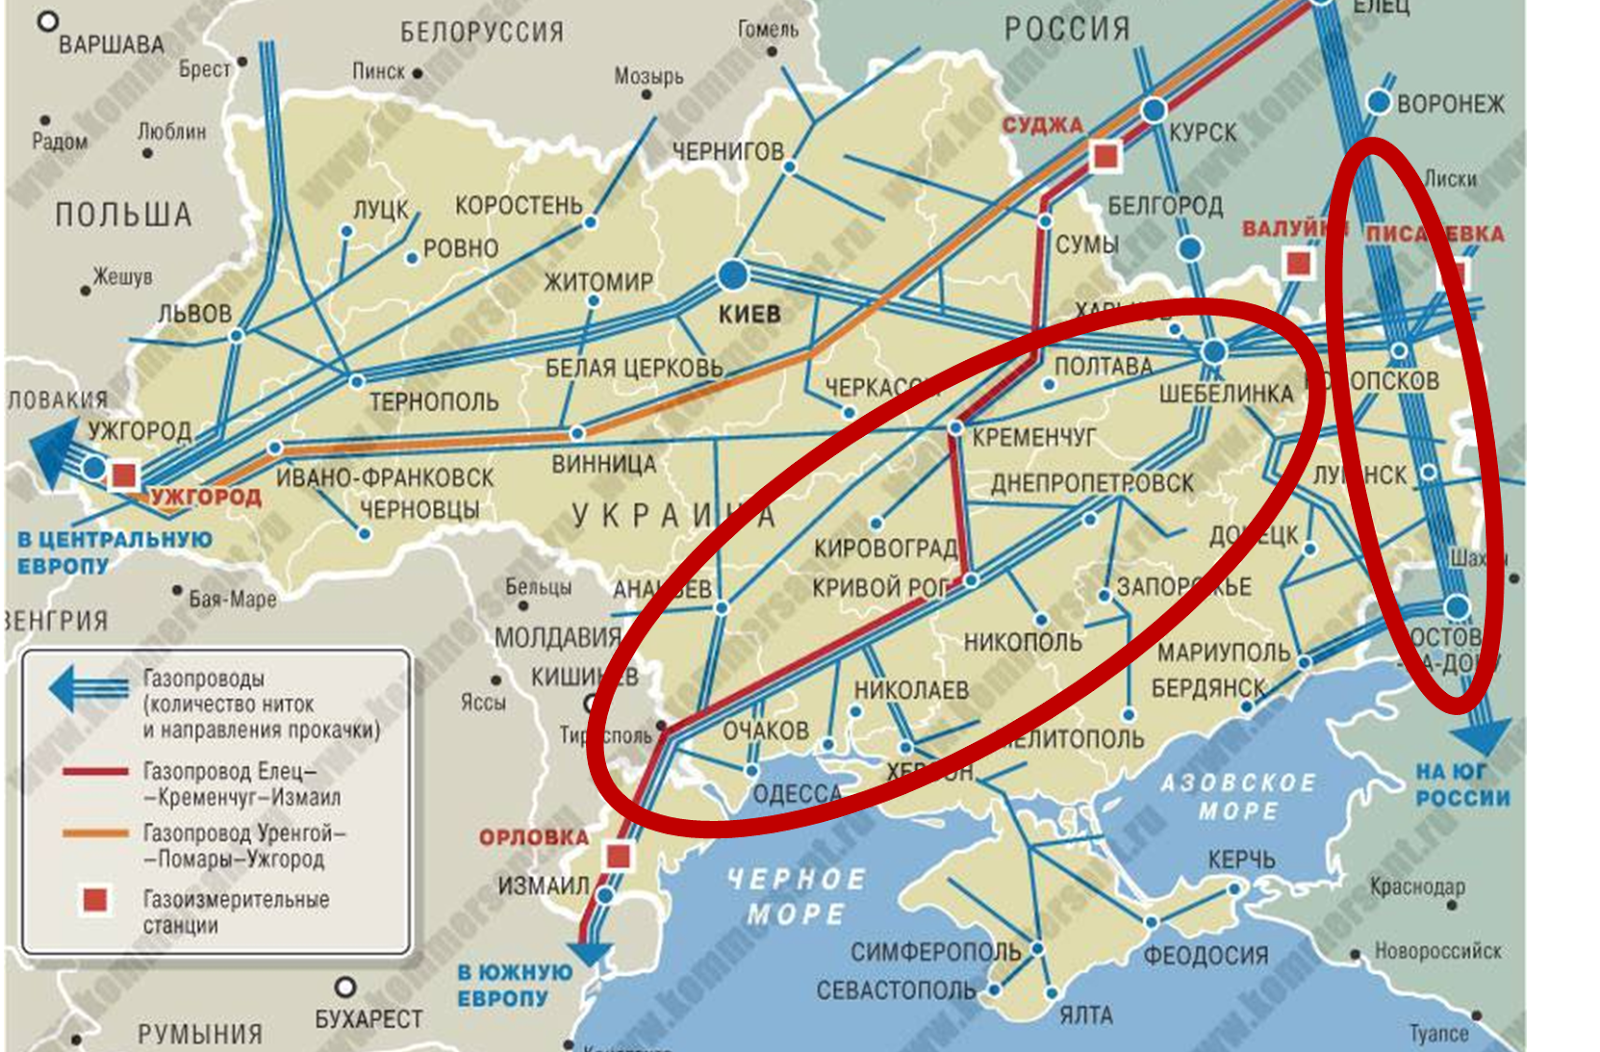 Помары газопровод на карте. Схема газового трубопровода через Украину. Газовая труба на Украине на карте. Помары Ужгород газопровод карта. Газопровод Уренгой-Помары-Ужгород на карте Европы.